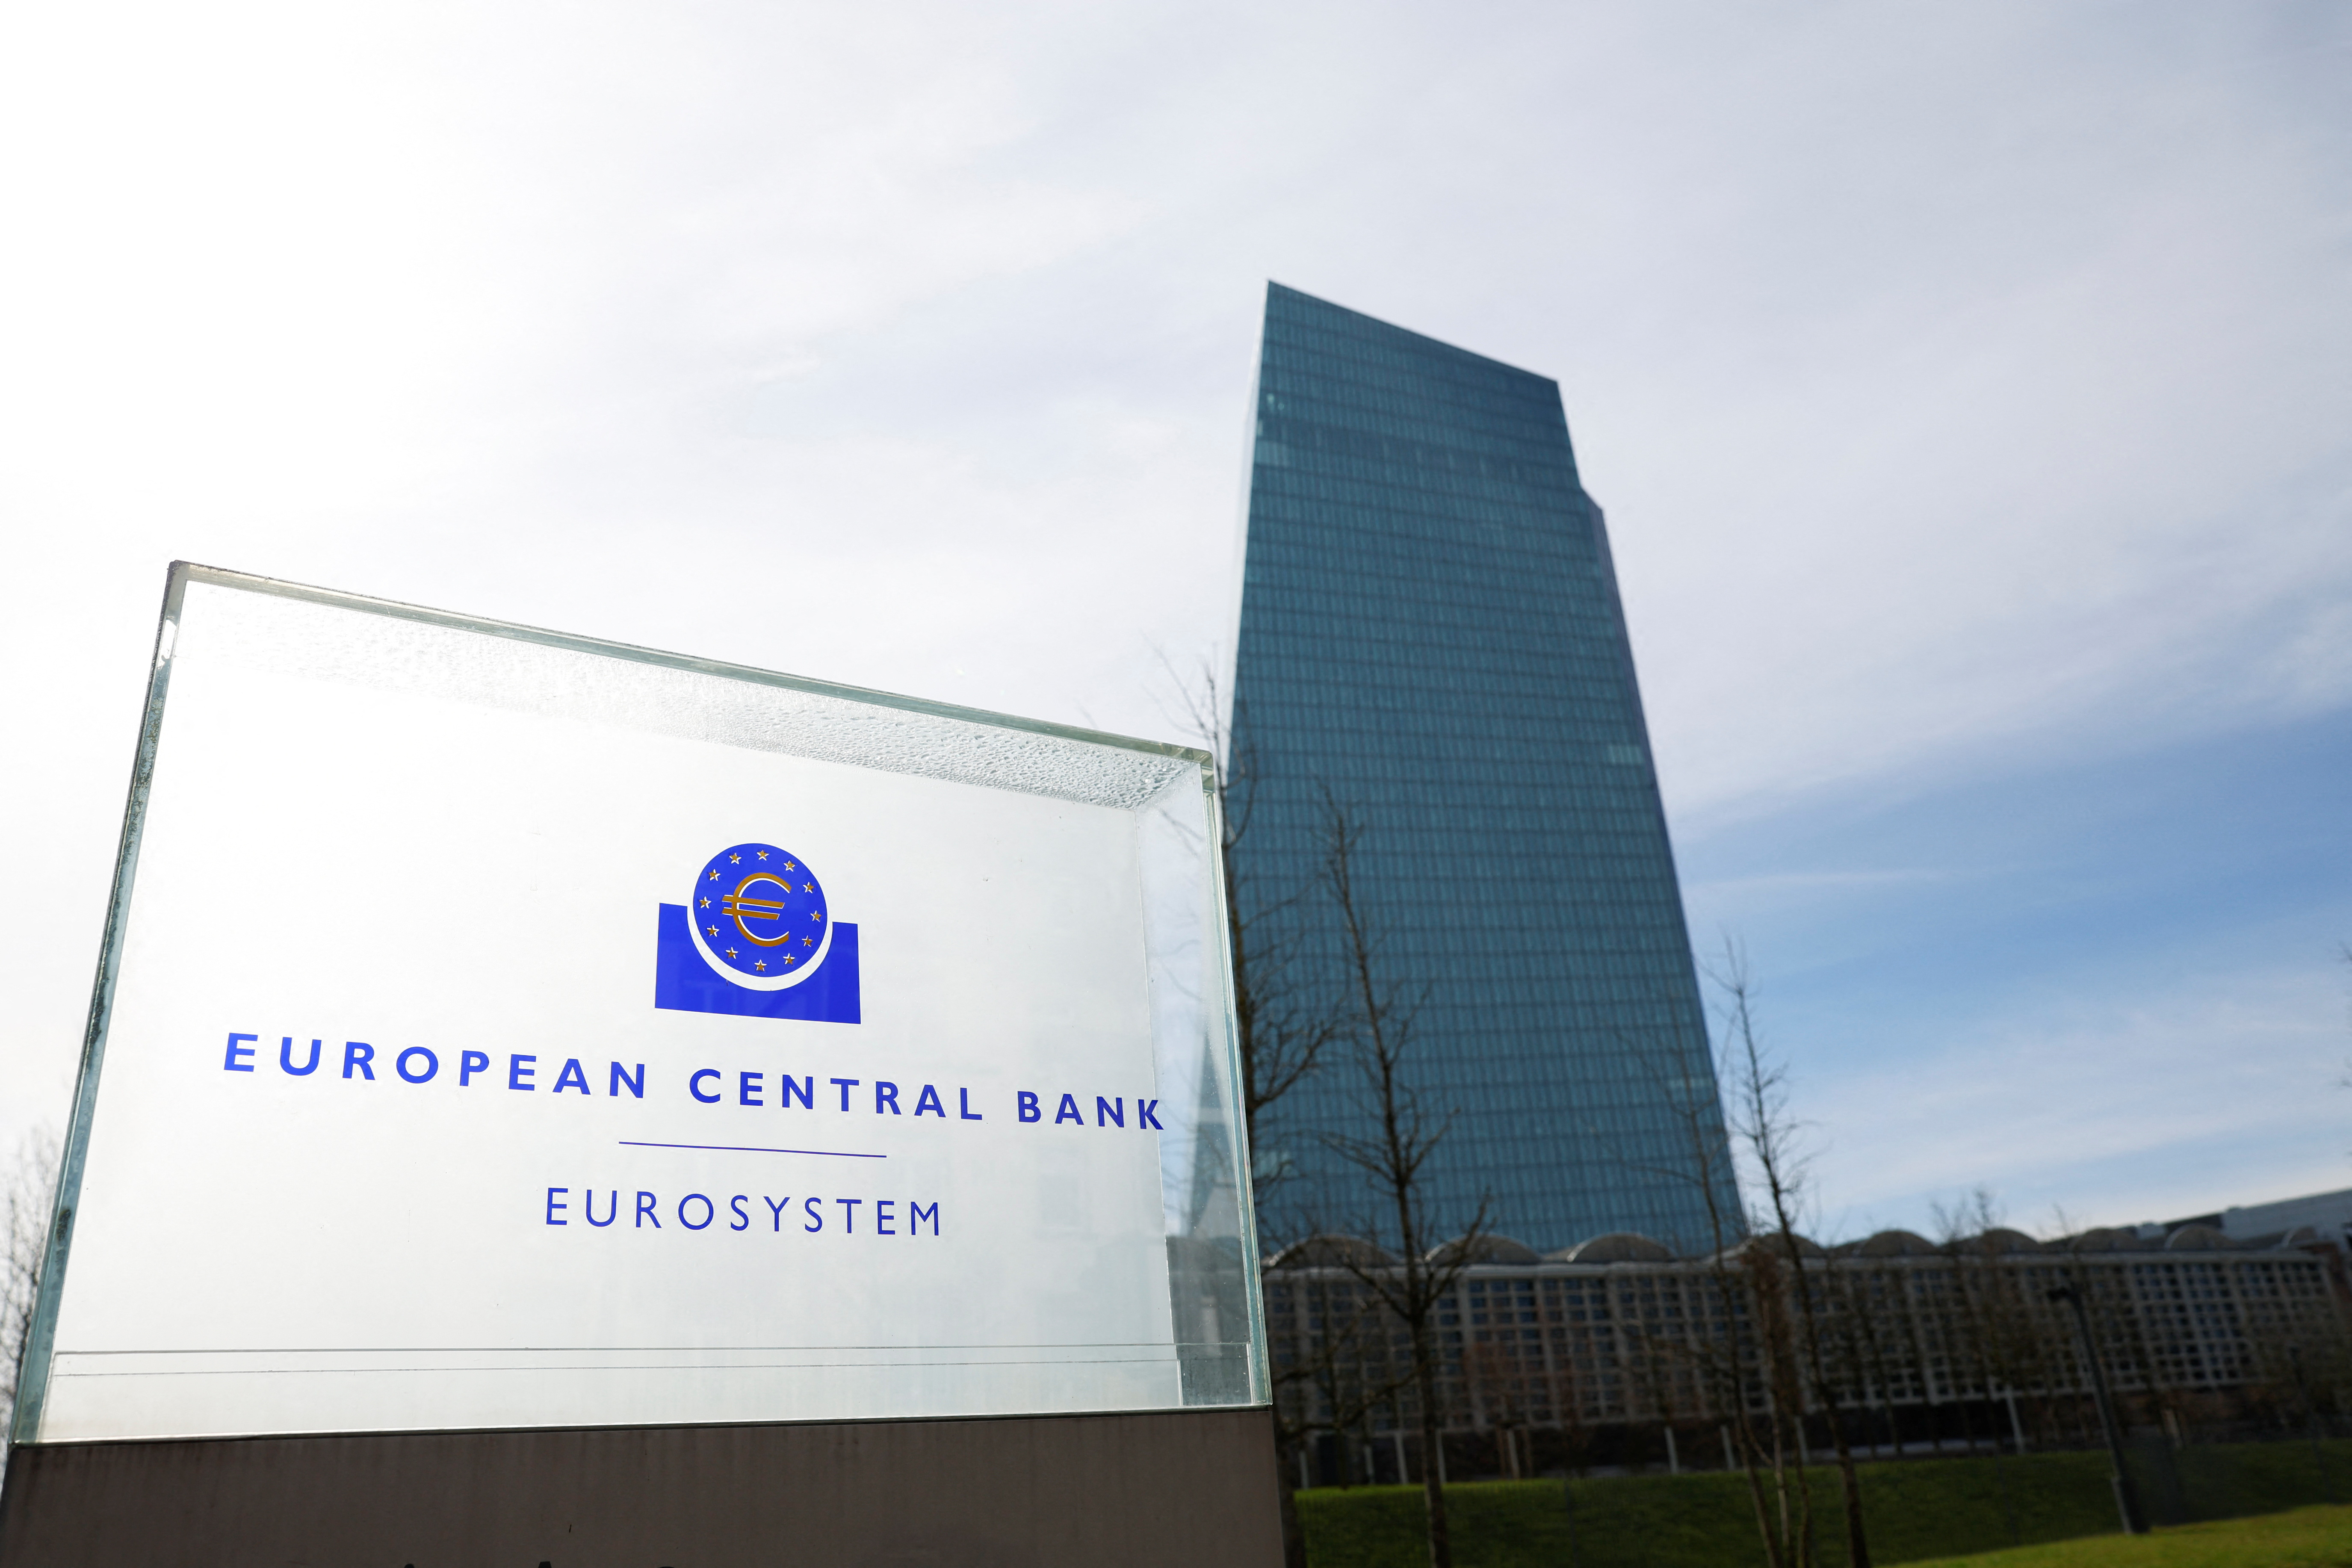 La hausse des taux d'intérêt fragilise la stabilité financière de la zone euro, selon la BCE